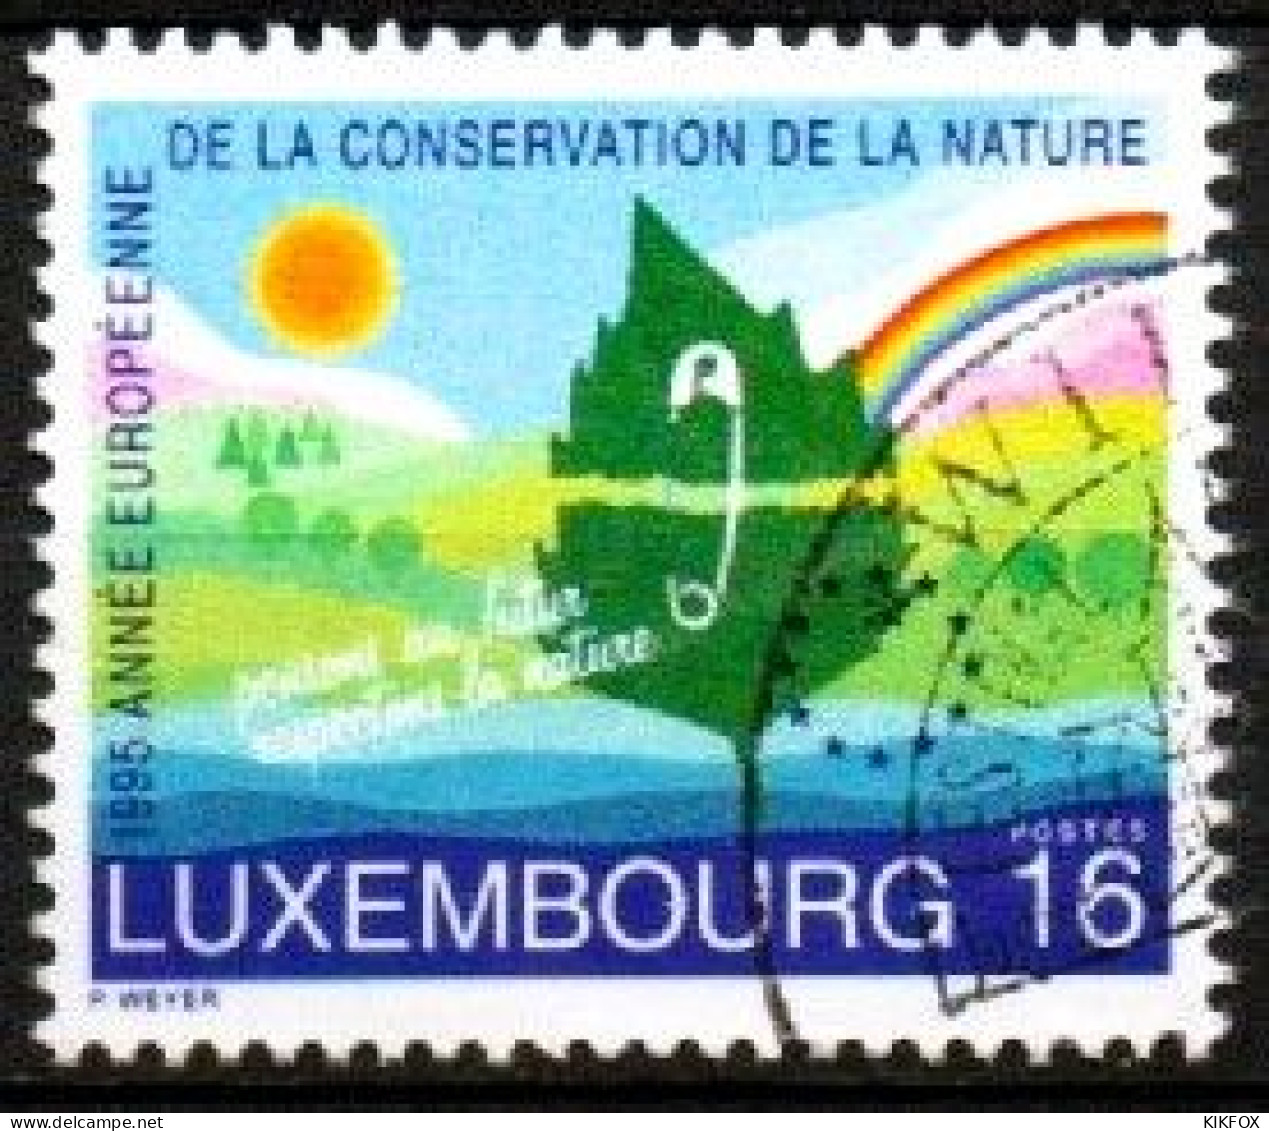 Luxembourg, Luxemburg, 1995,  Y&T 1323 , MI 1373, EUROPÄISCHES NATURSCHUTZJAHR, GESTEMPELT,  Oblitéré - Oblitérés